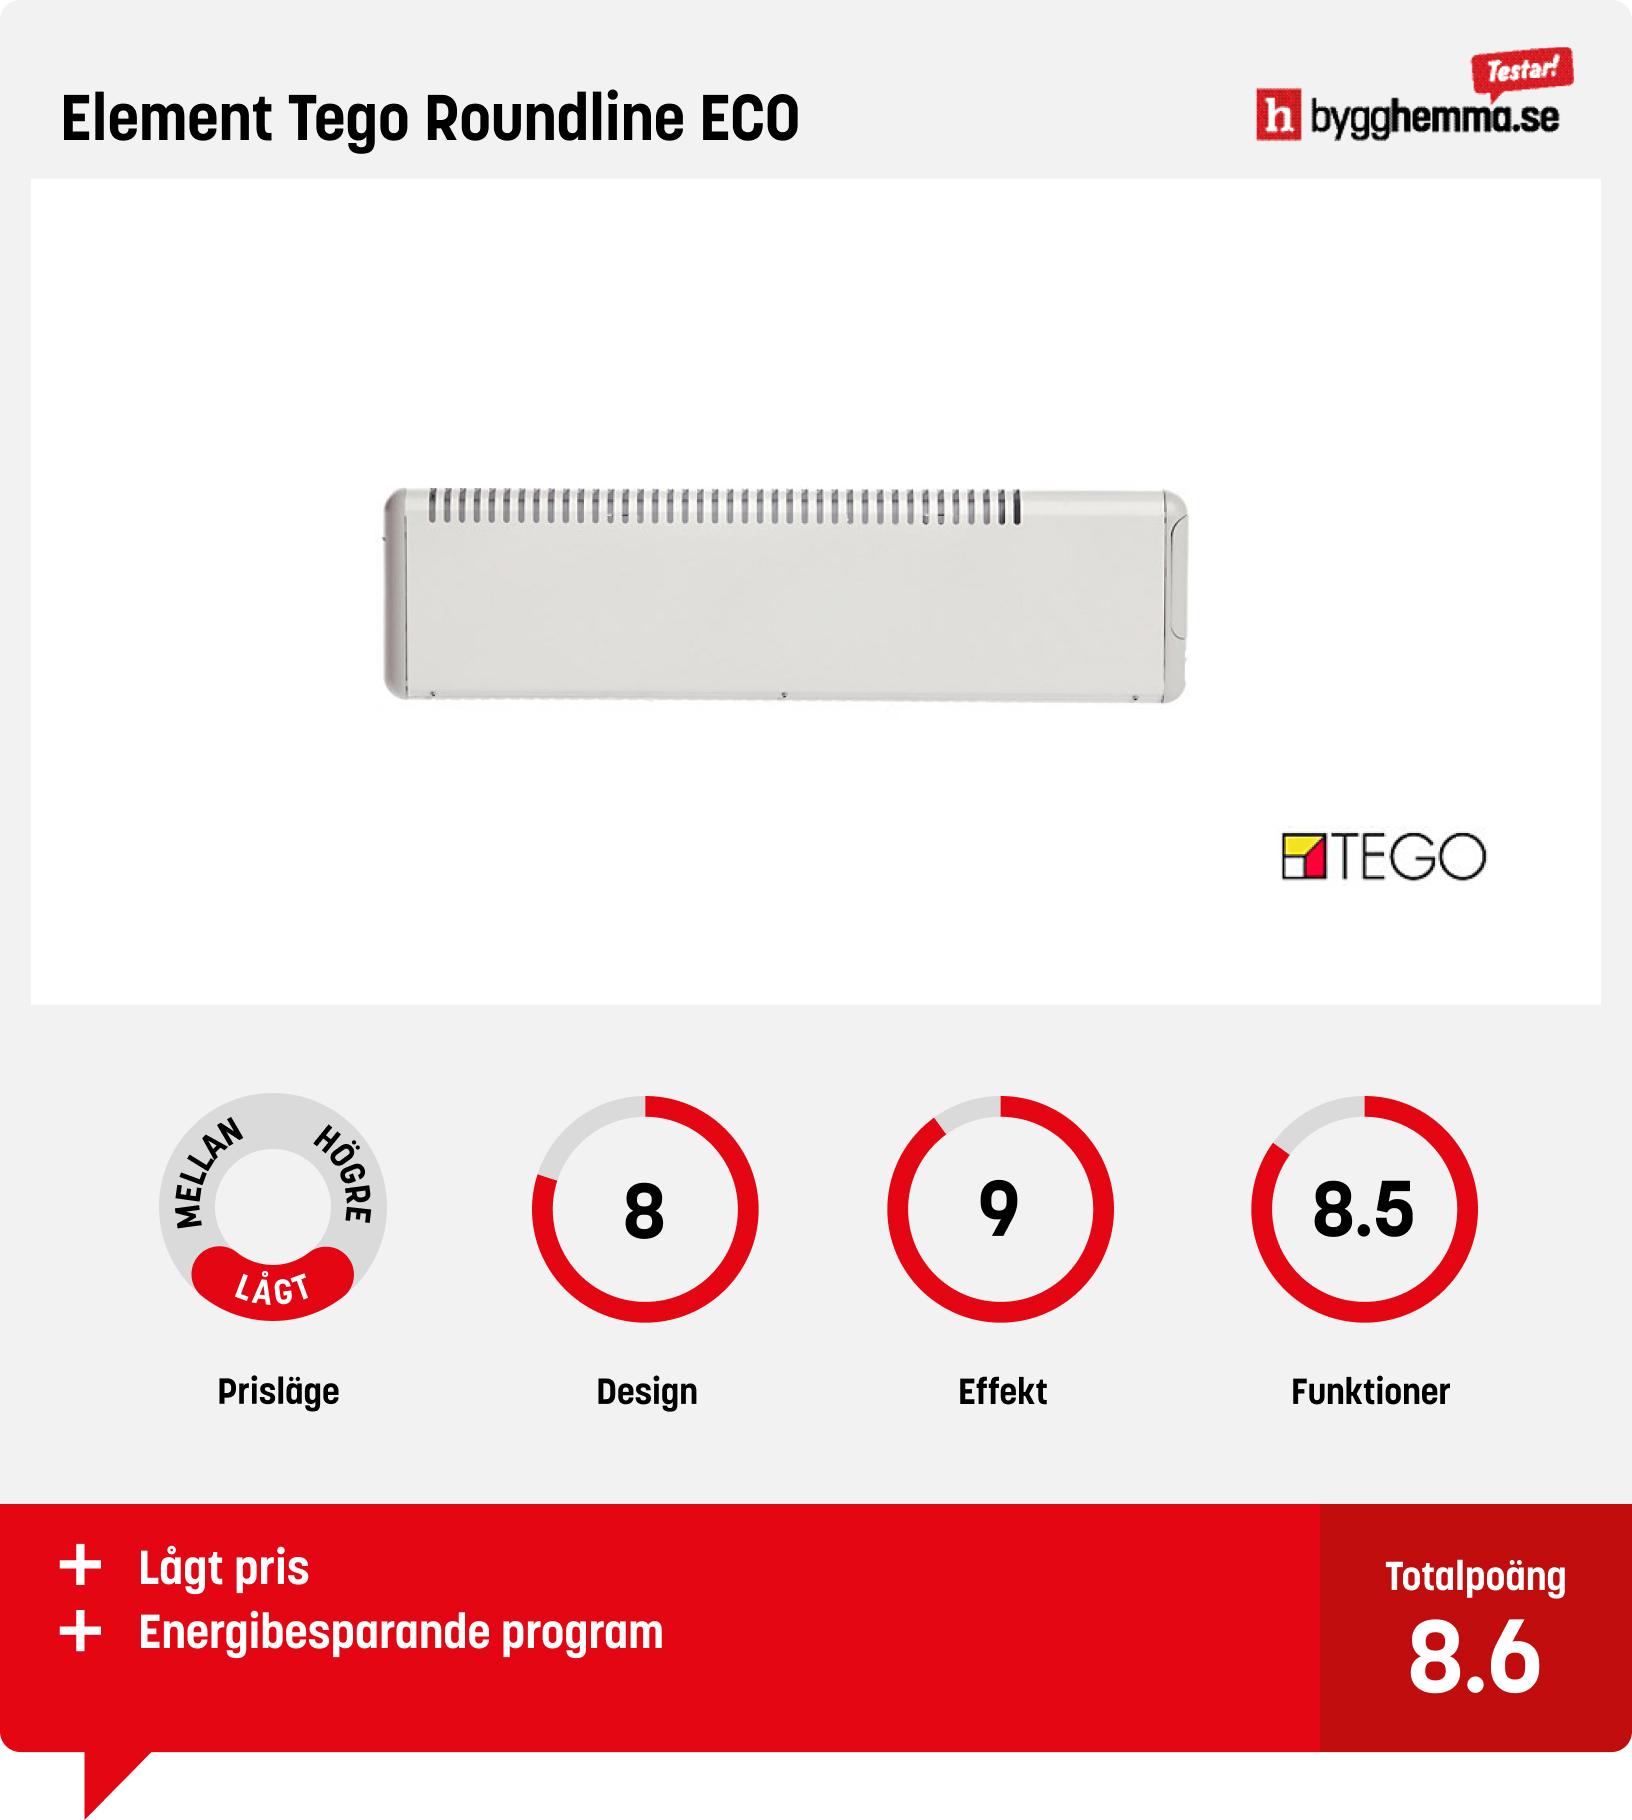 Element bäst i test - Element Tego Roundline ECO